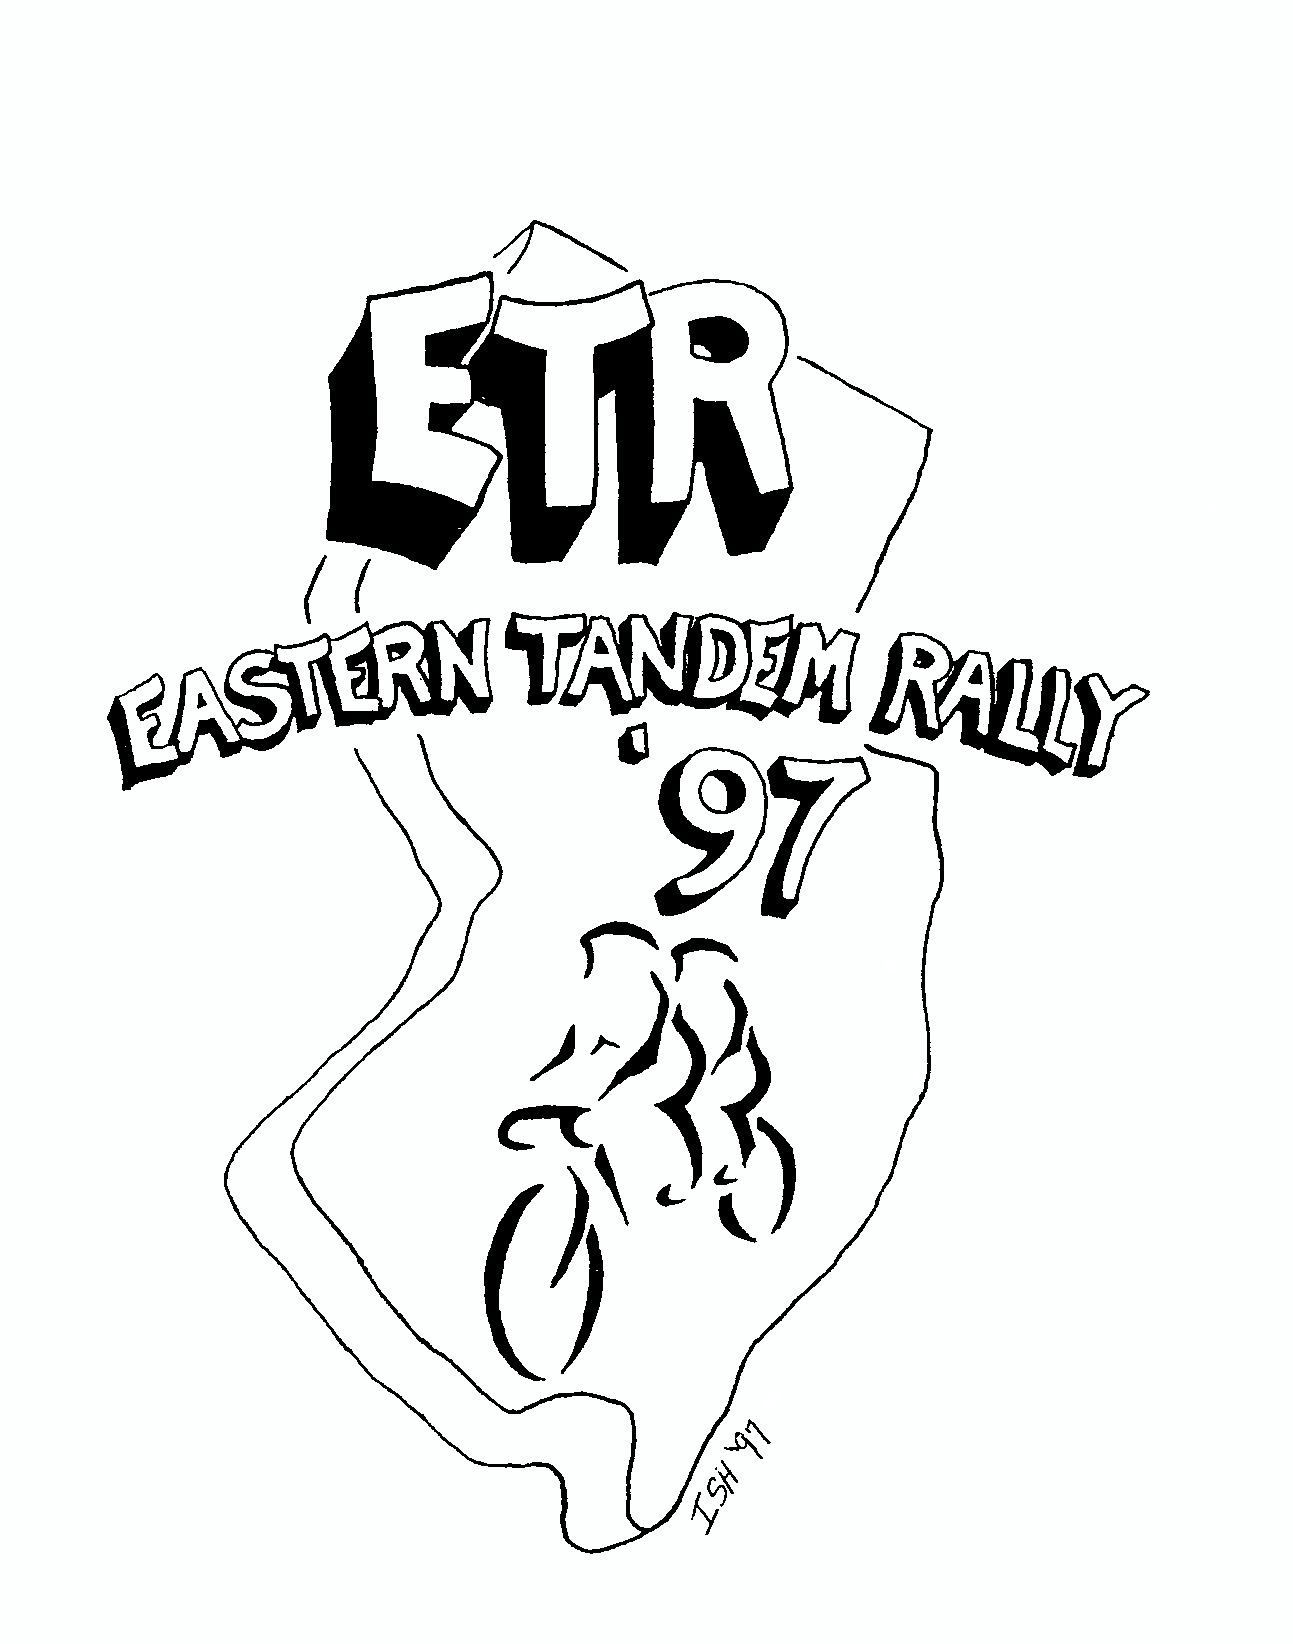 ETR1997 Basking Ridge Jersey Artwork   Design: Larry Isherwood